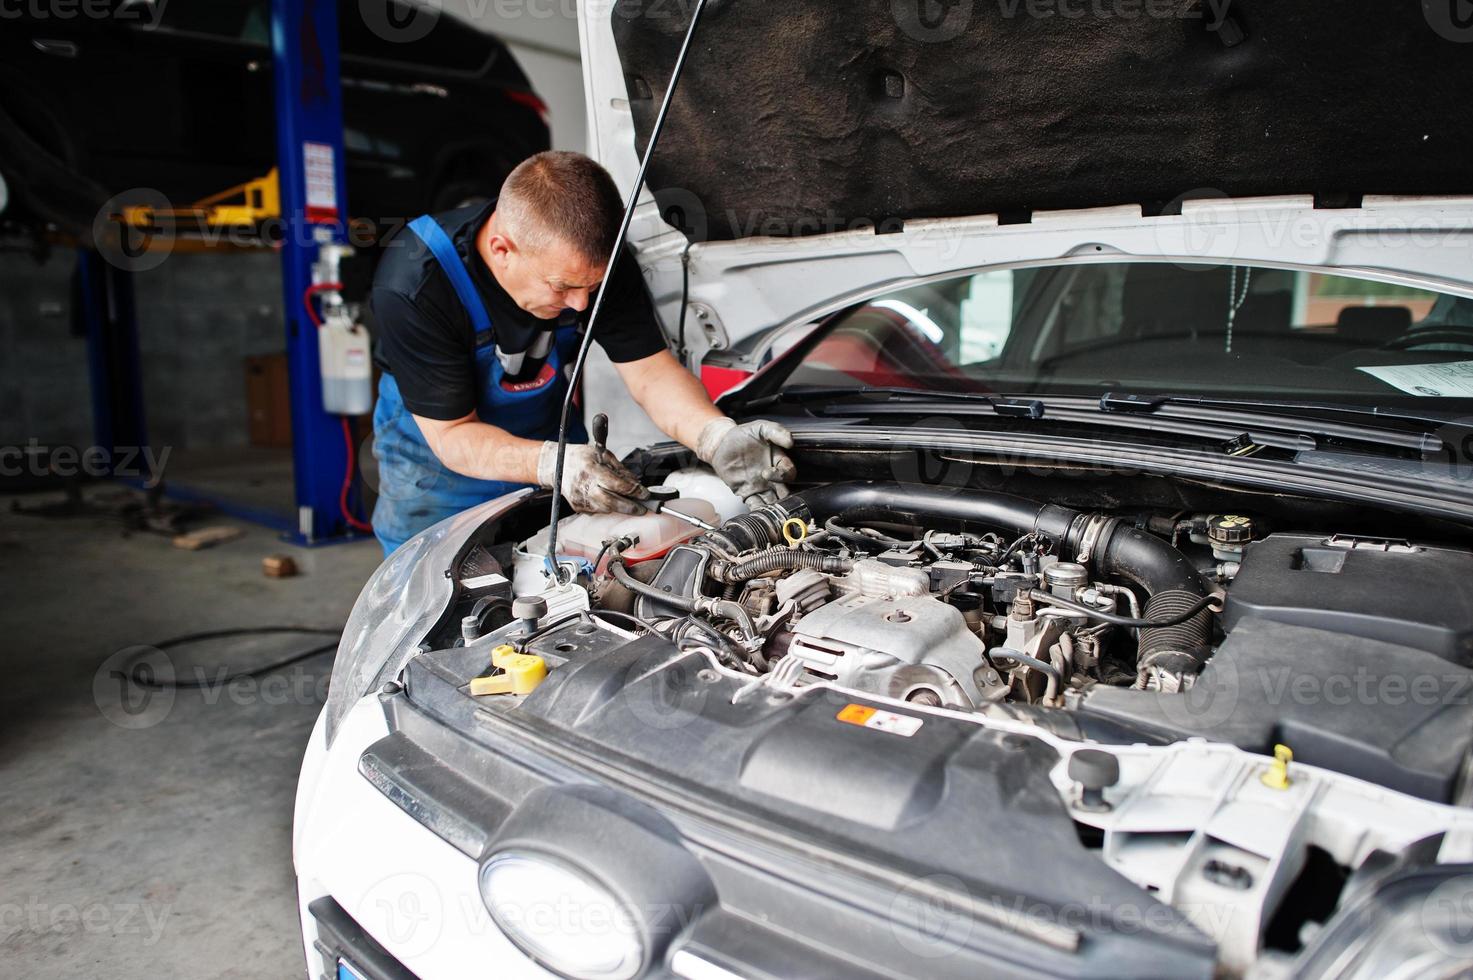 auto reparatie en onderhoud thema. monteur in uniform werken in autoservice, motor controleren. foto